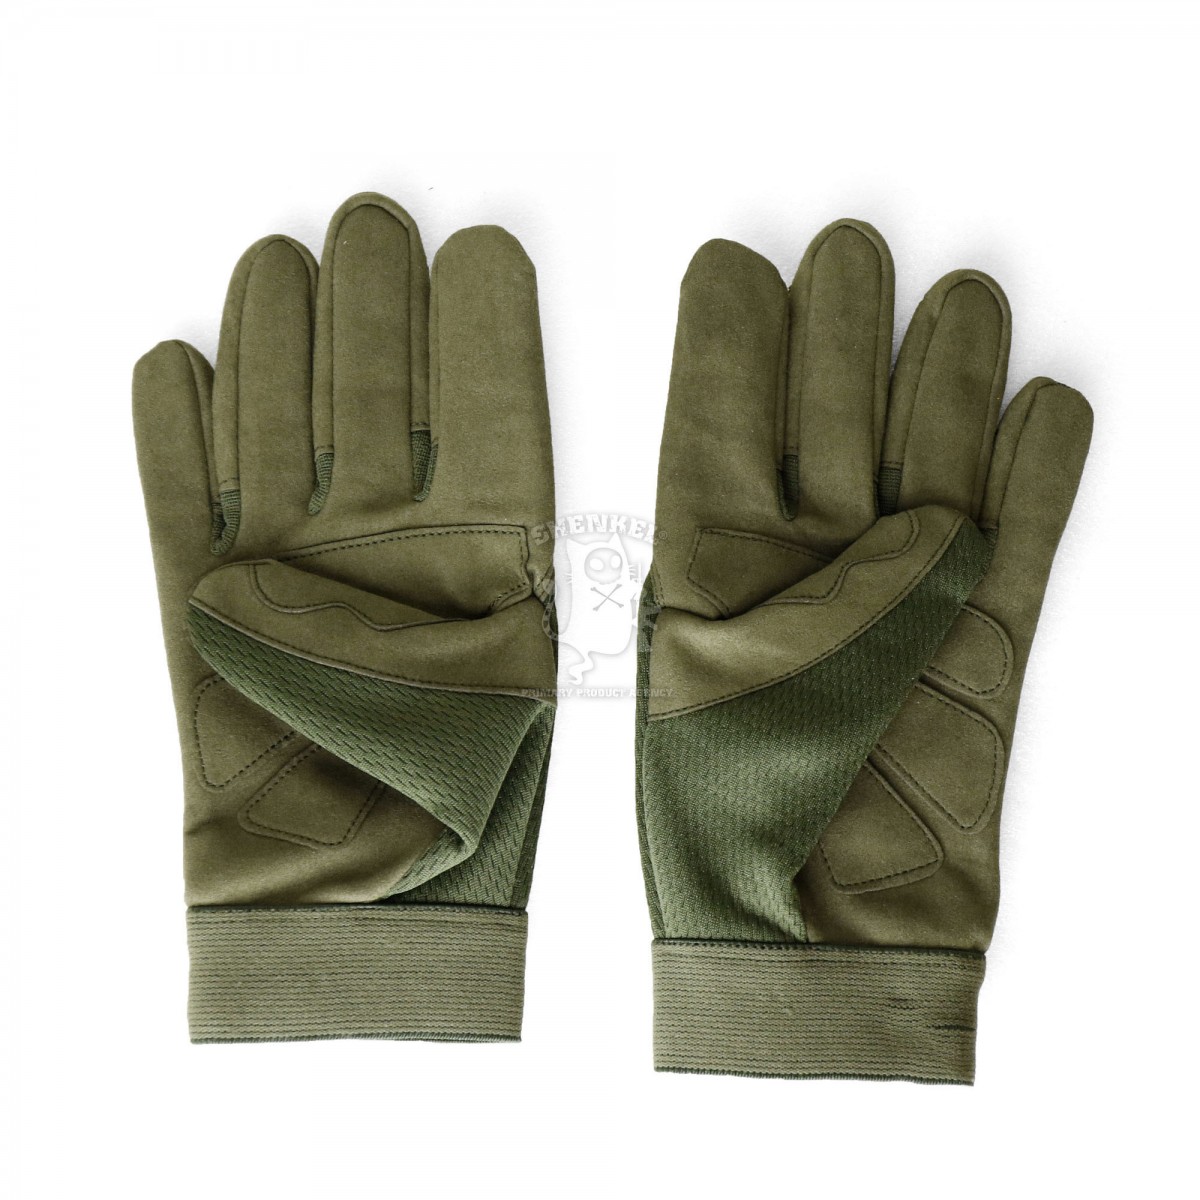 タクティカル グローブ メカニックタイプ  ( 緑 オリーブドラブ SMLXLサイズ )軽量 速乾 サバゲー ミリタリー アウトドア 手袋 メンズ